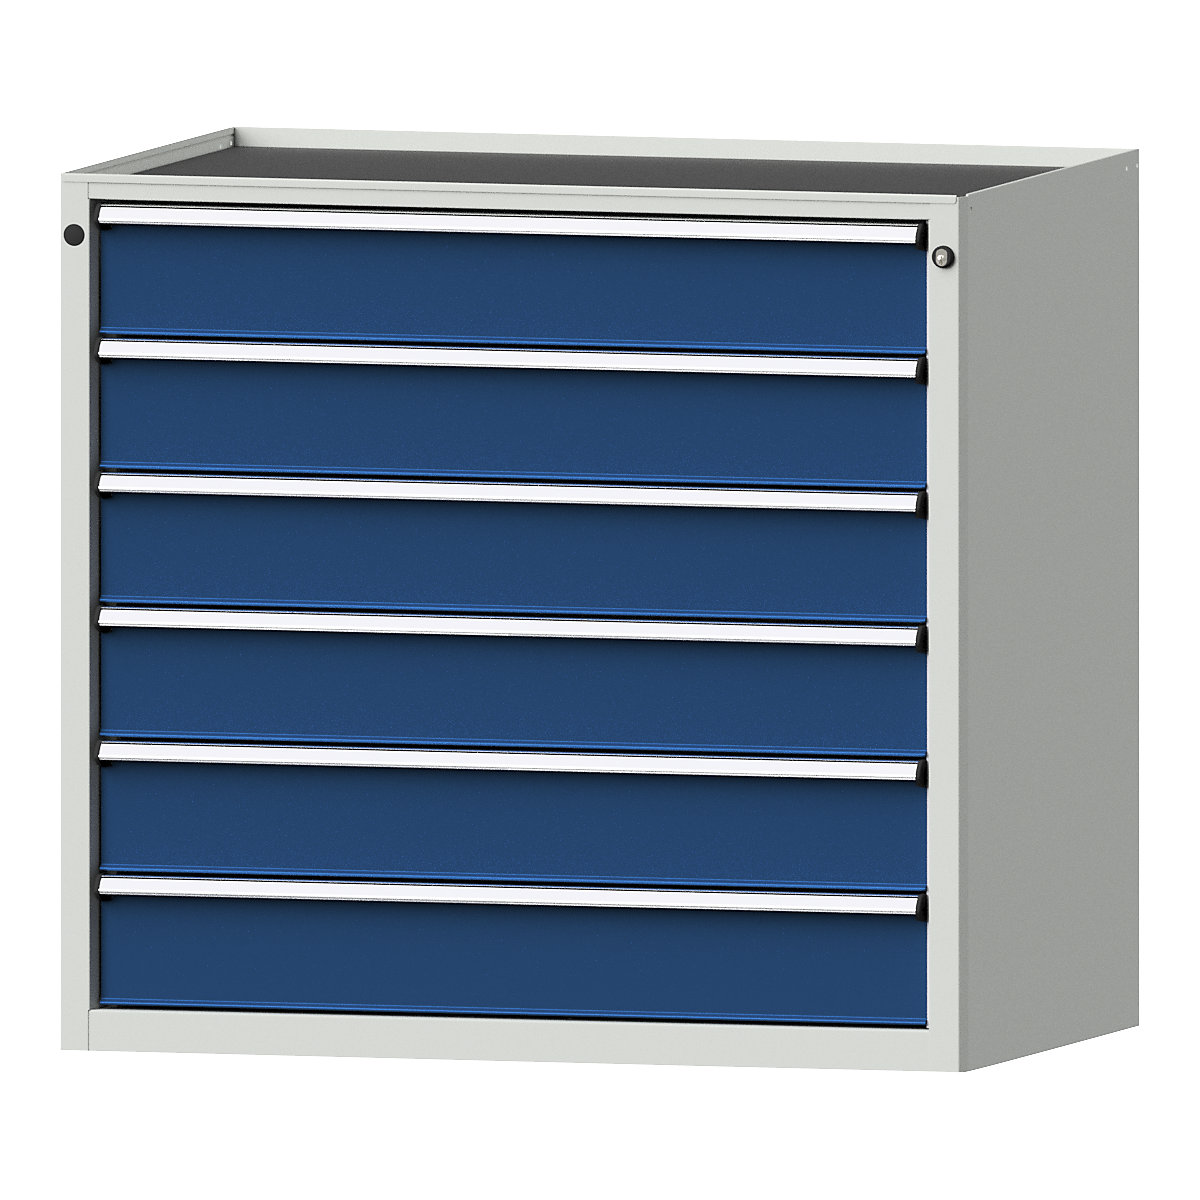 Szafa z szufladami – ANKE, szer. x głęb. 1060 x 675 mm, nośność szuflady 200 kg, 6 szuflad, wys. 980 mm, front niebieski gencjanowy-14